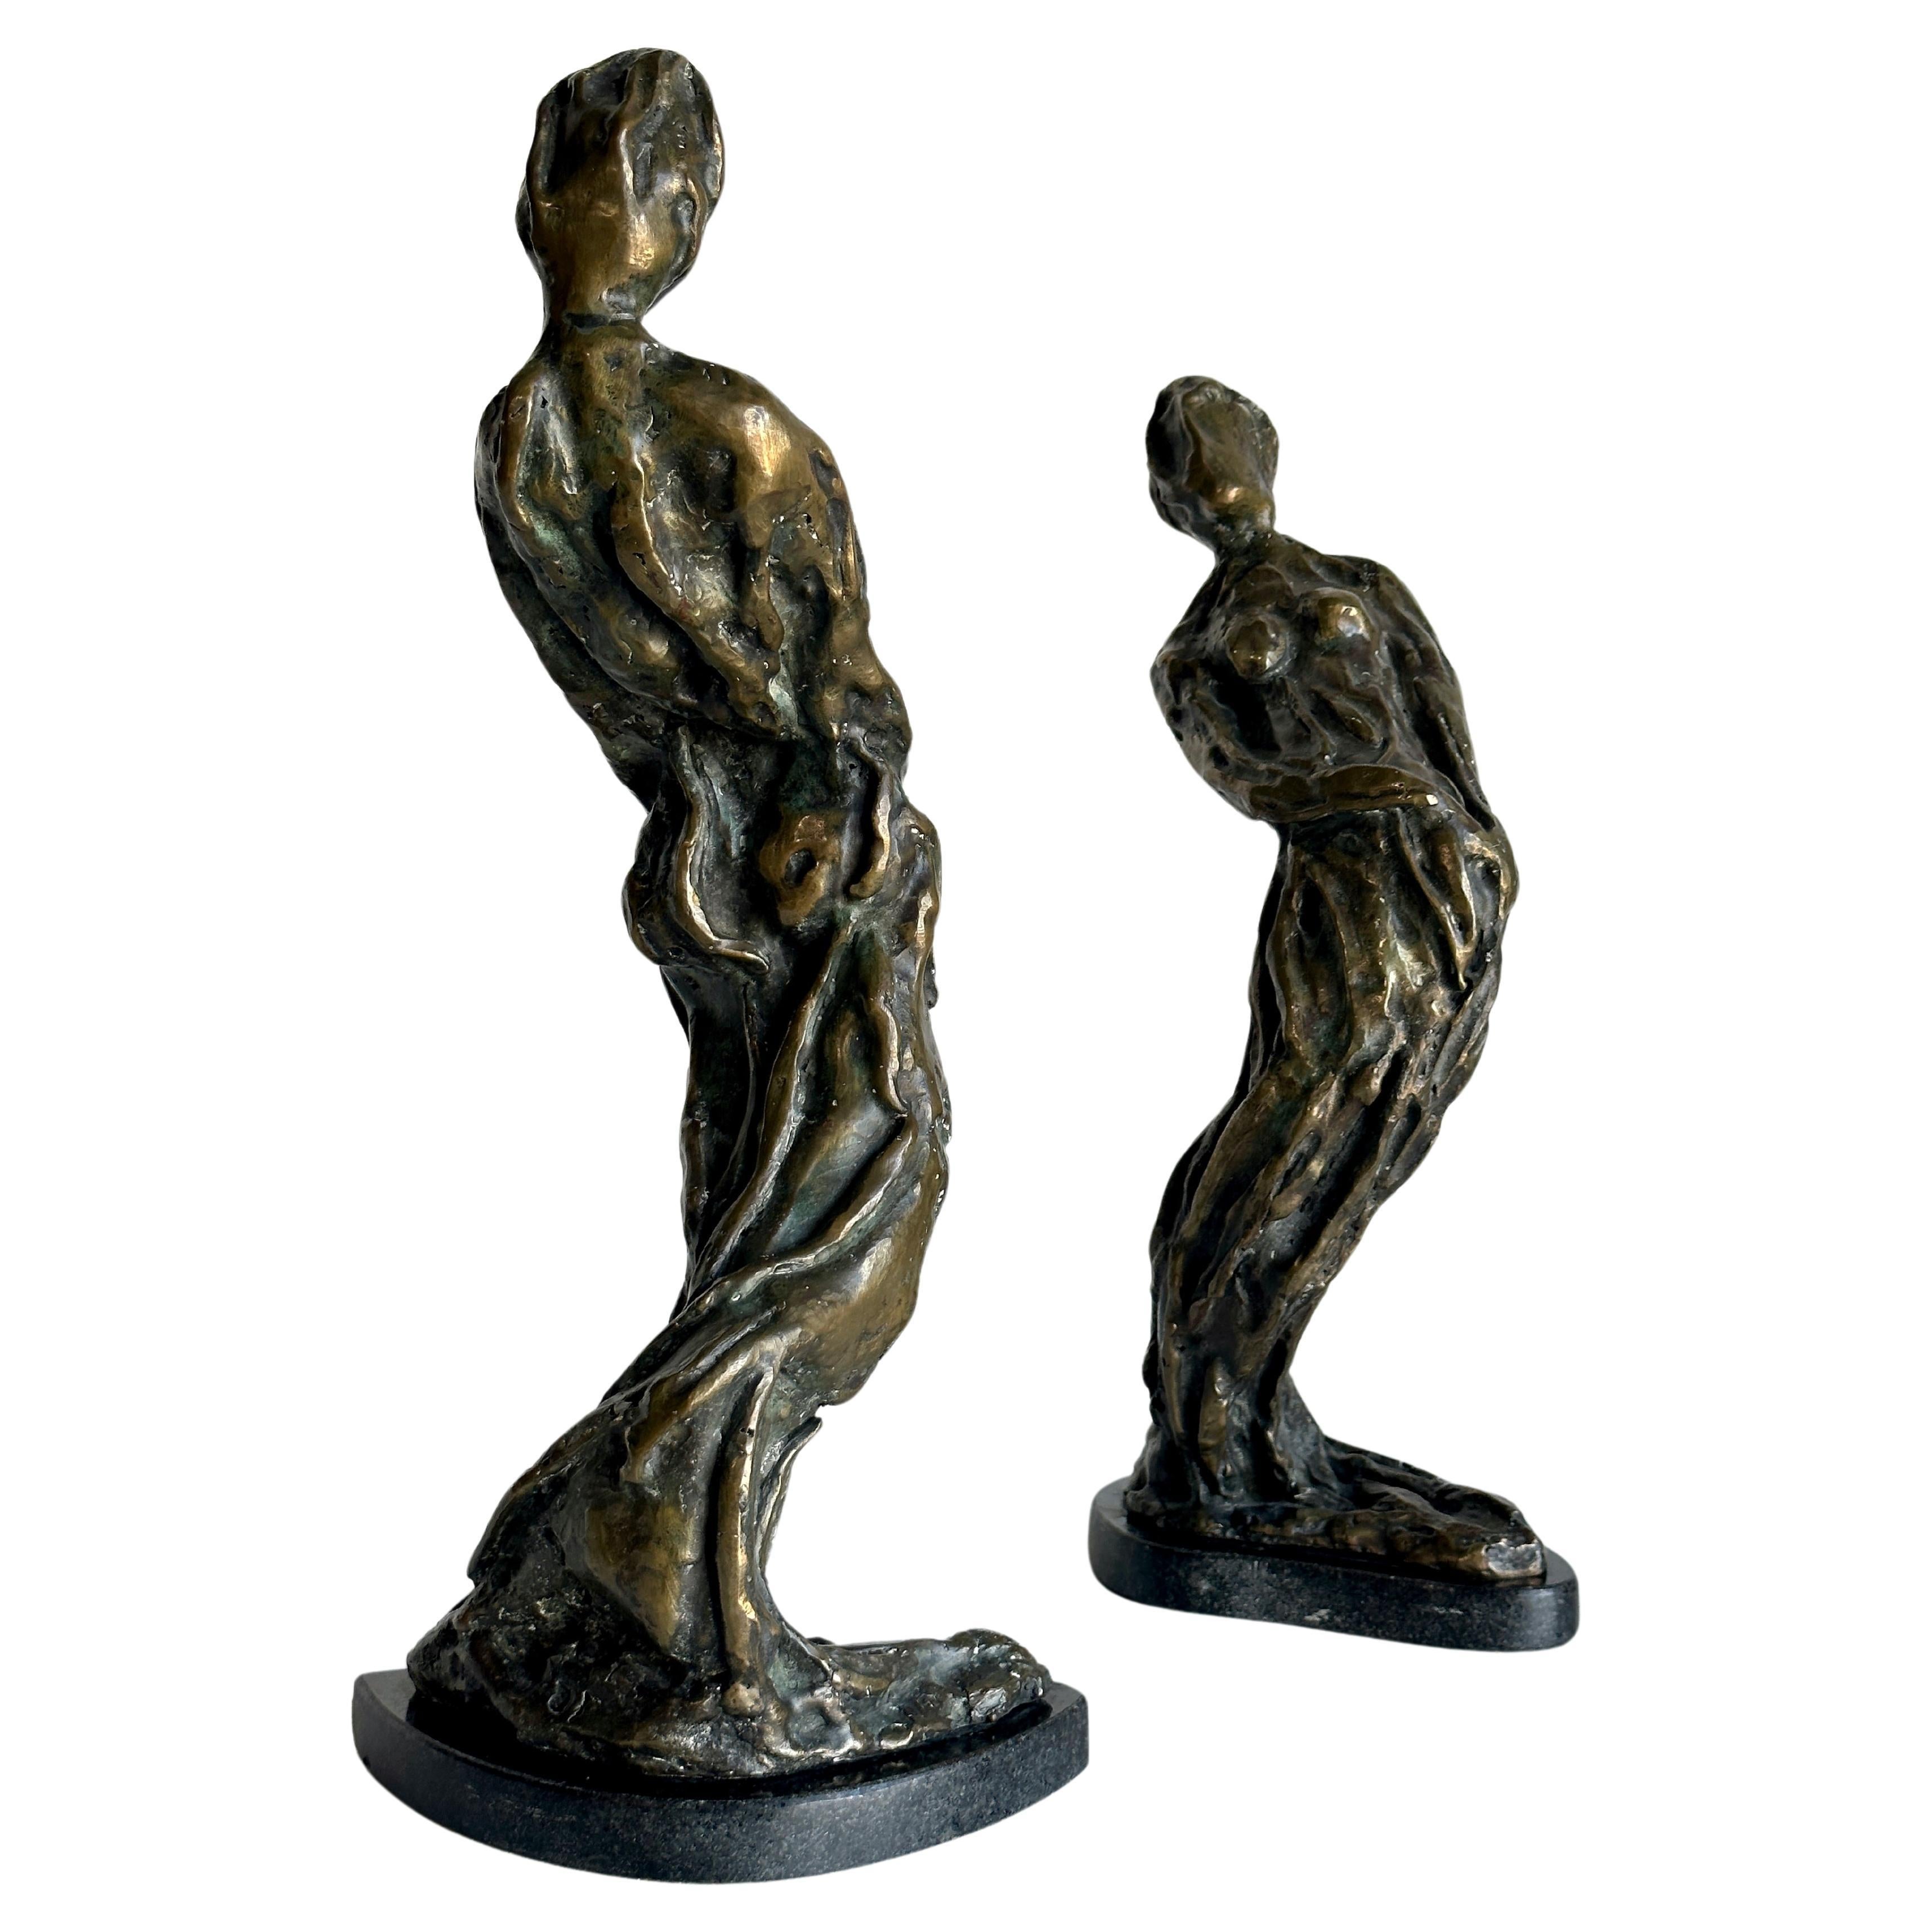 Sculptures abstraites figuratives modernistes en bronze, vendues par paire. Les deux sont signés par l'artiste - il semble qu'il s'agisse de 